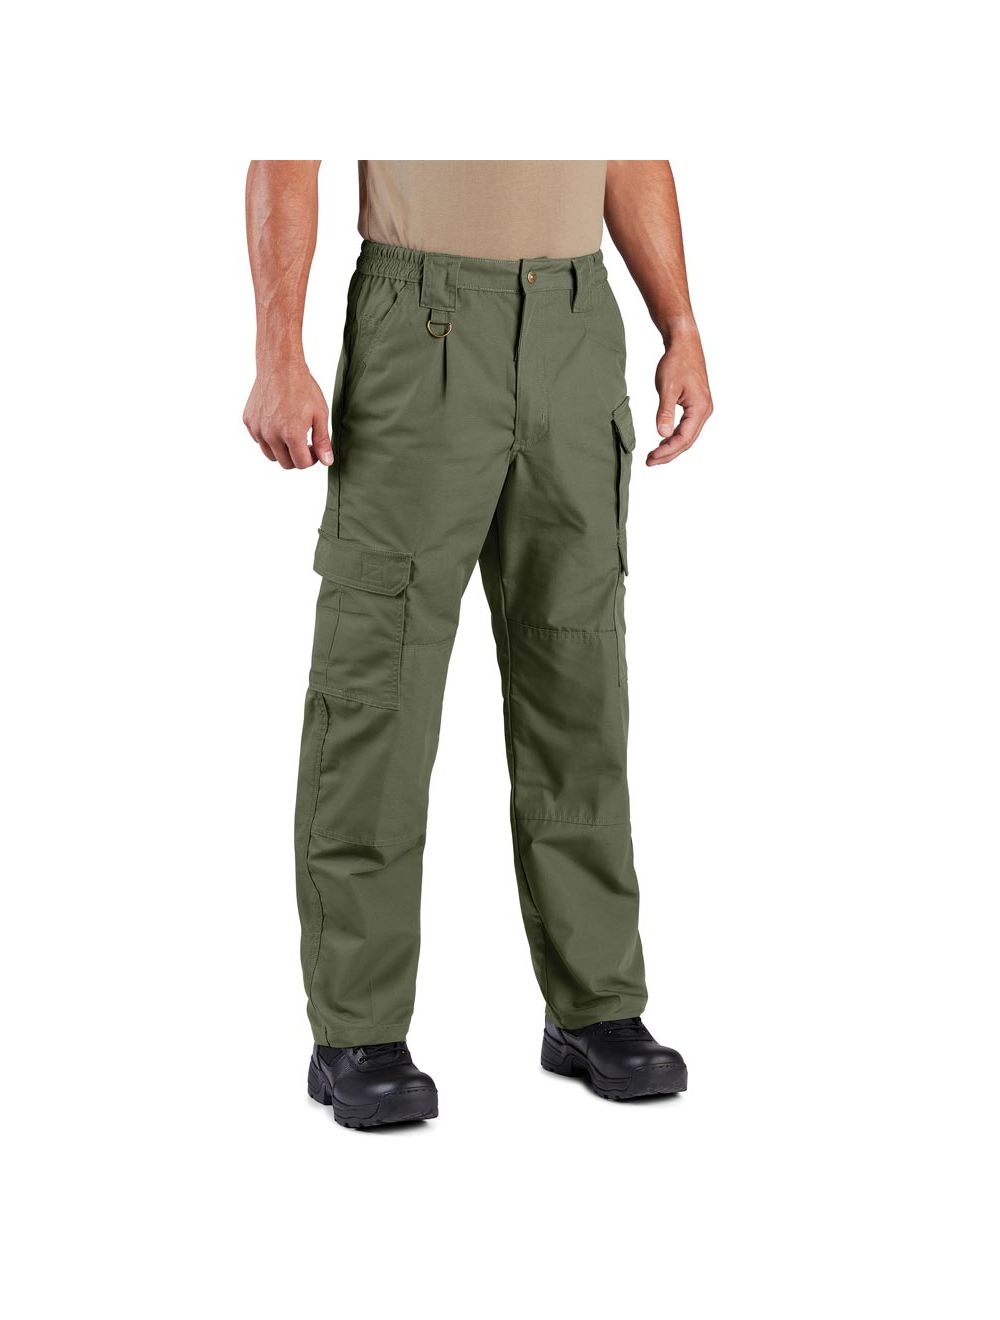 Propper F5252-82 Canvas Men's Tactical Pants - Polycotton Canvas